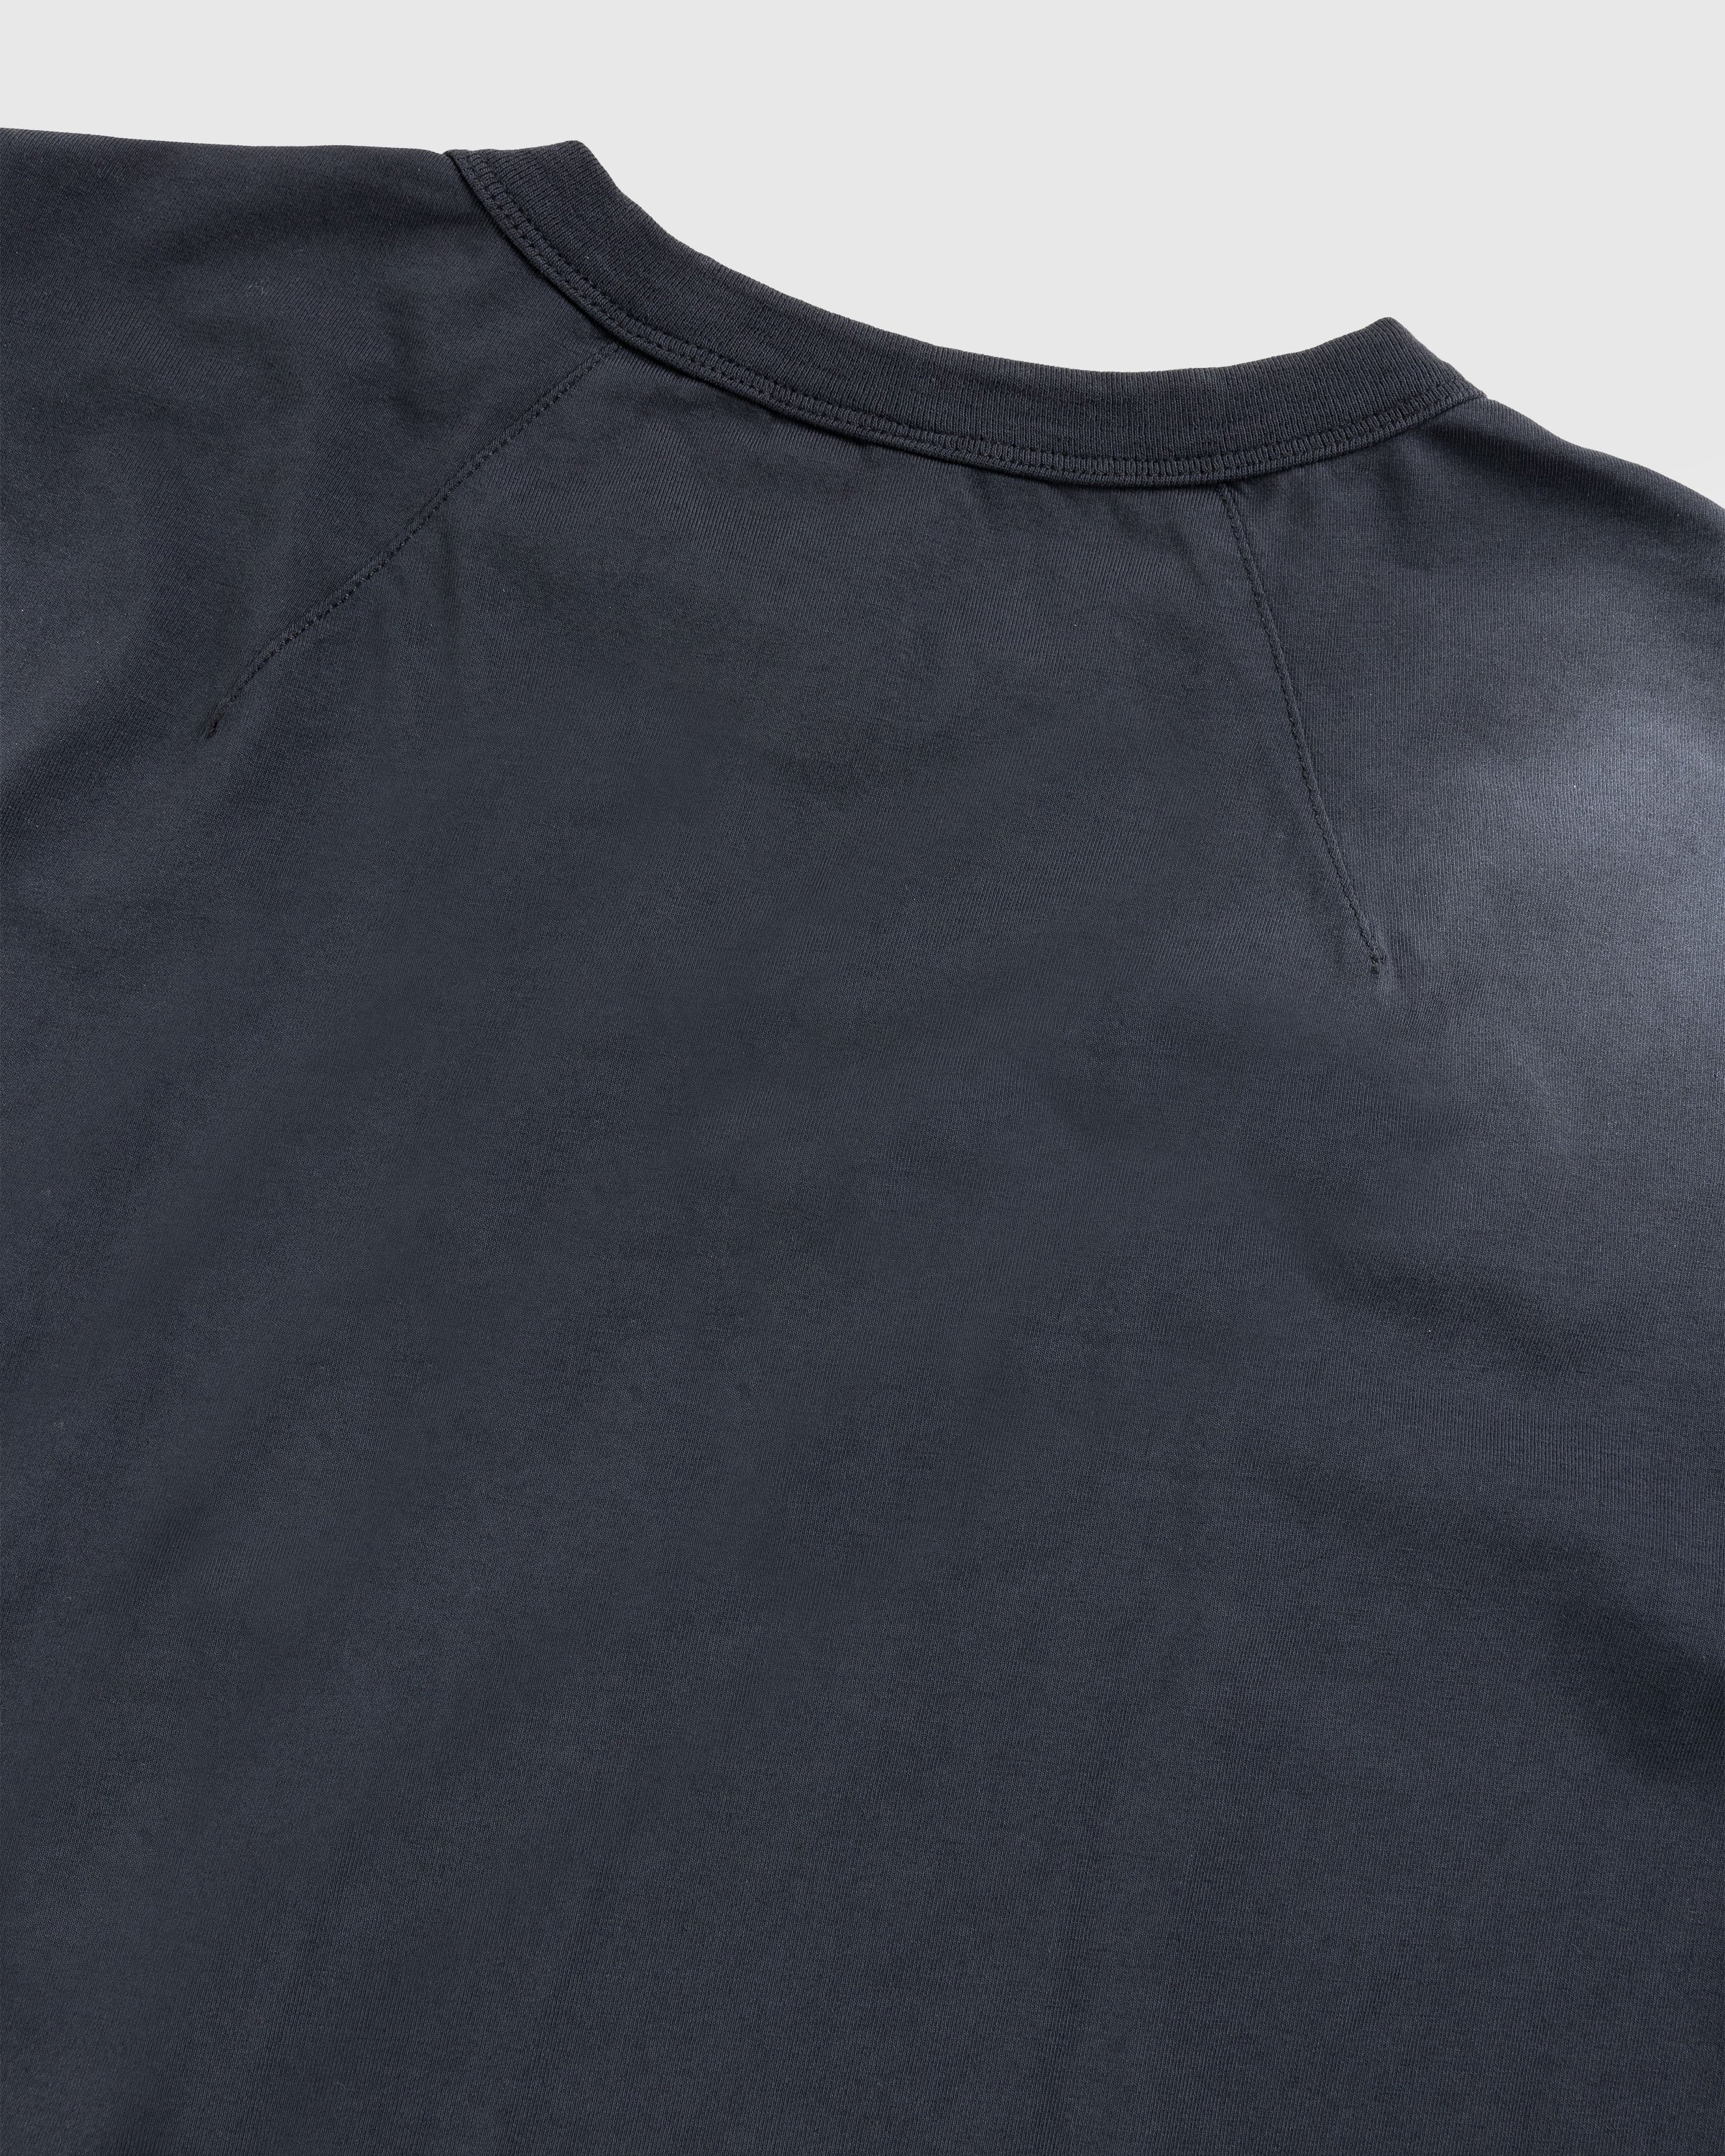 Entire Studios - Primer Longsleeve Washed Black - Clothing - Black - Image 6